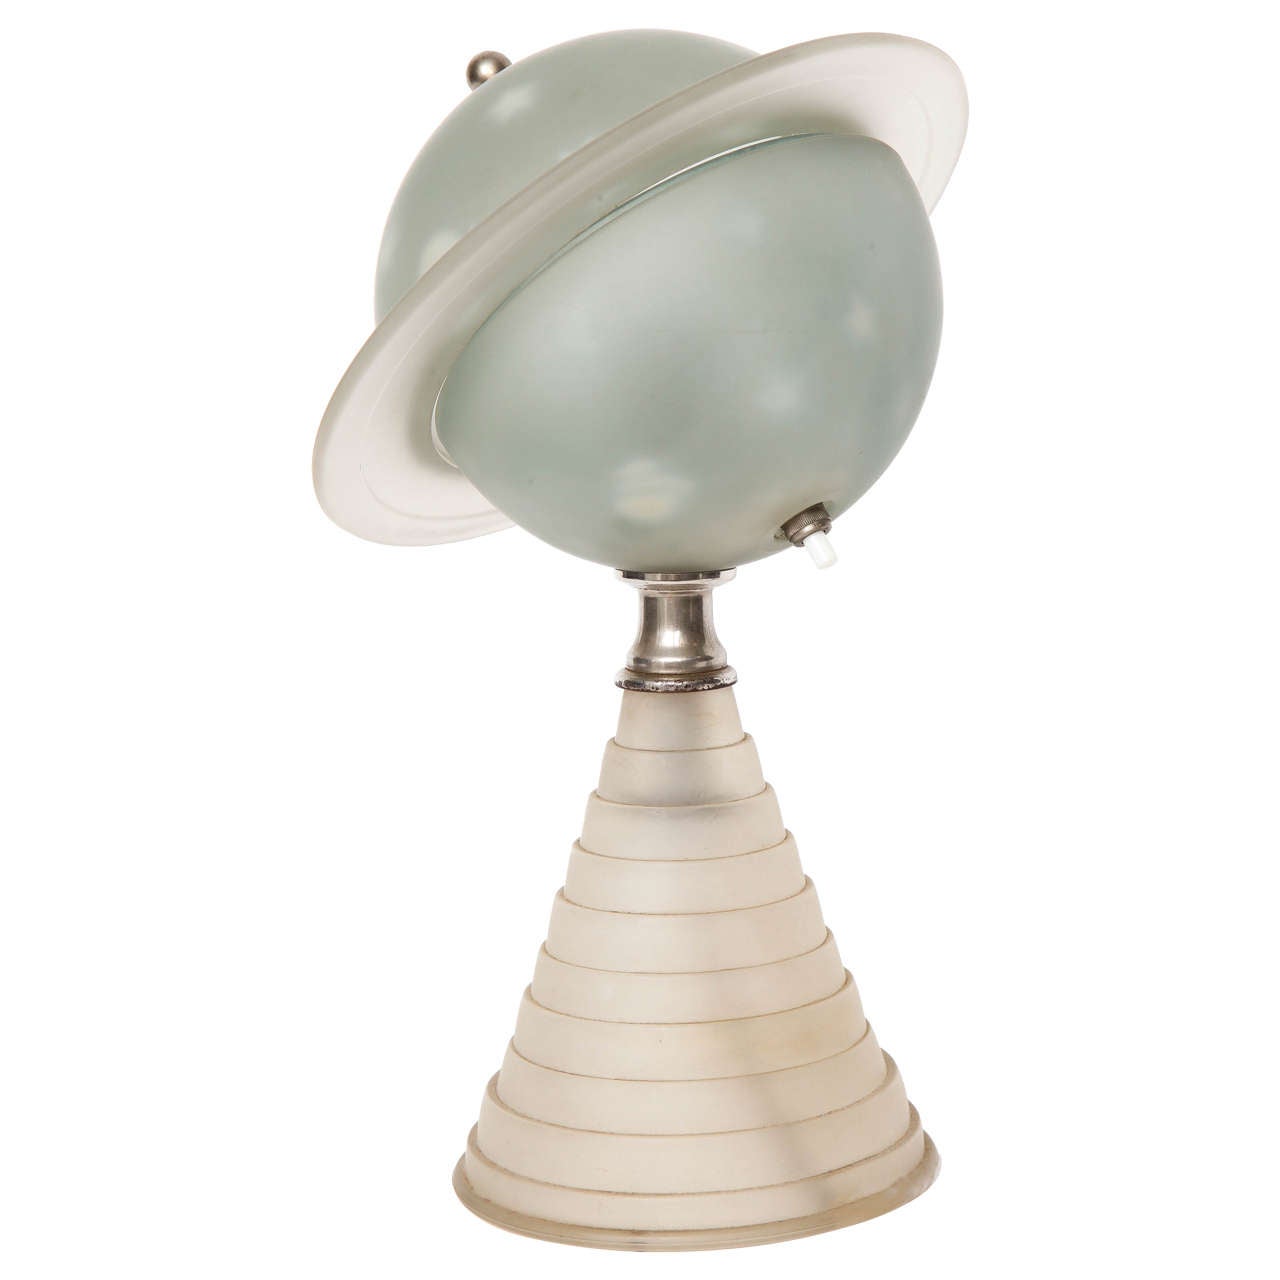 Rare 1930s "Saturne" Lamp